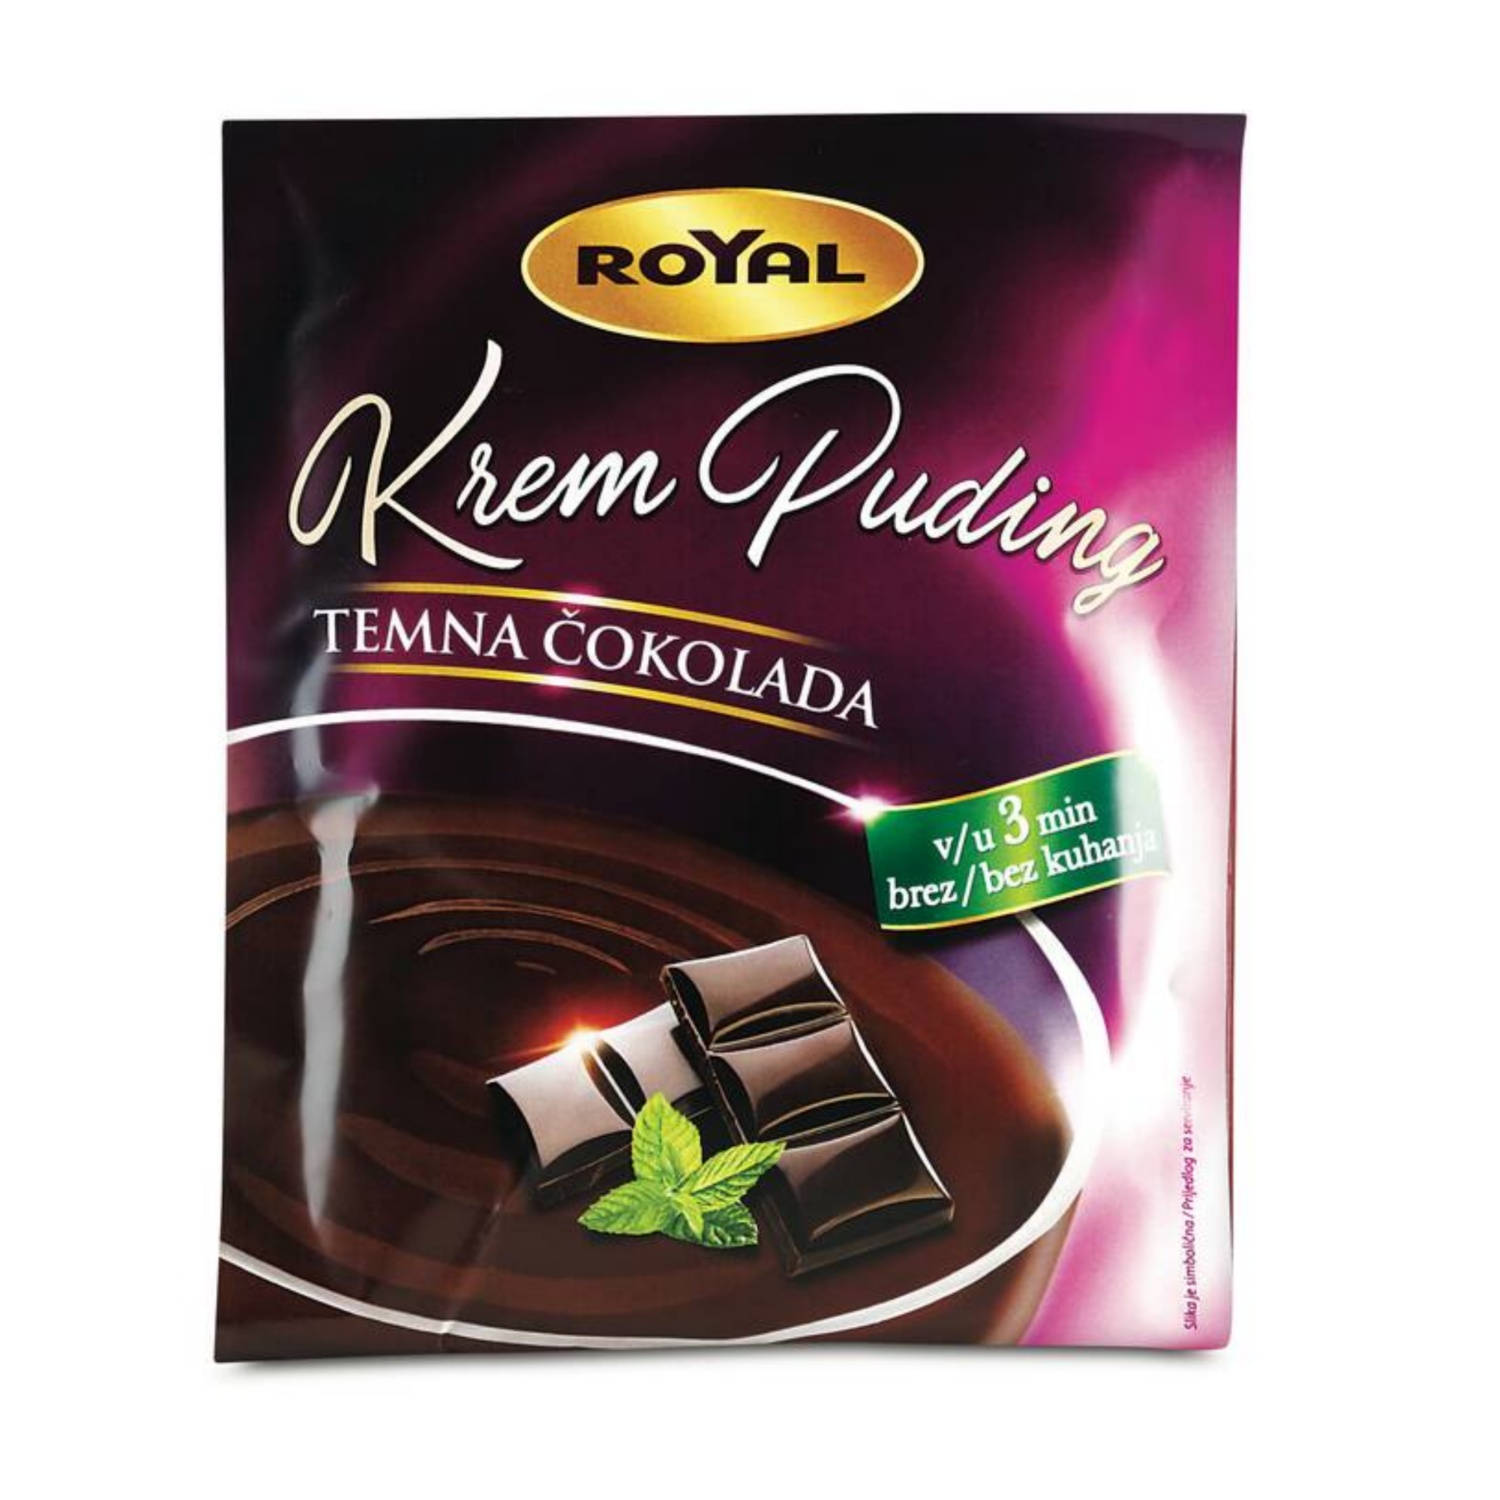 ROYAL Krem puding brez kuhanja, temna čokolada